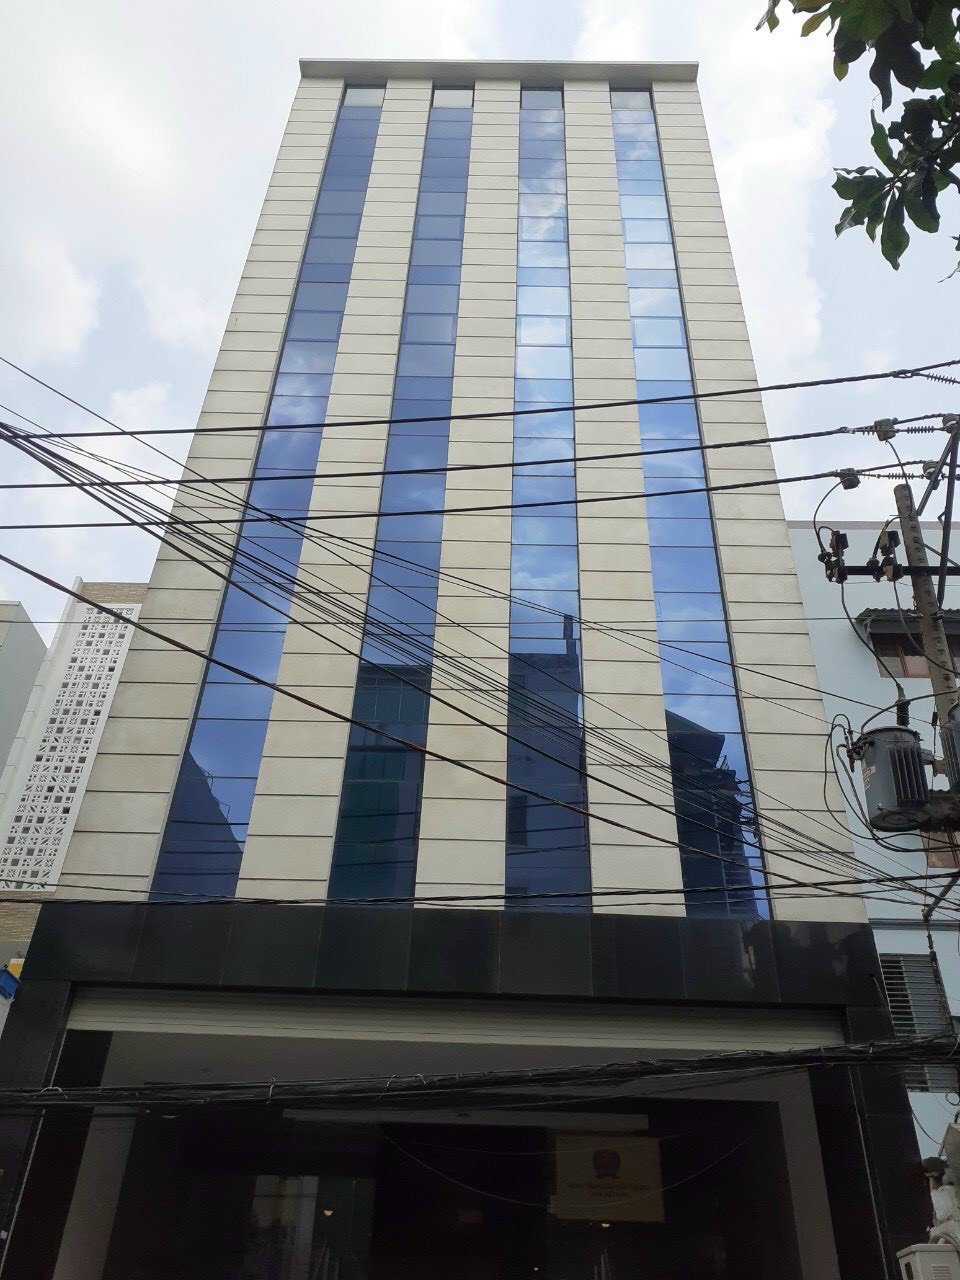 HIẾM ! tòa nhà mặt tiền đường Ung Văn Khiêm, DT: 5,8x 35m, 1 hầm 8 tầng nổi, giá 42 tỷ thương lượng